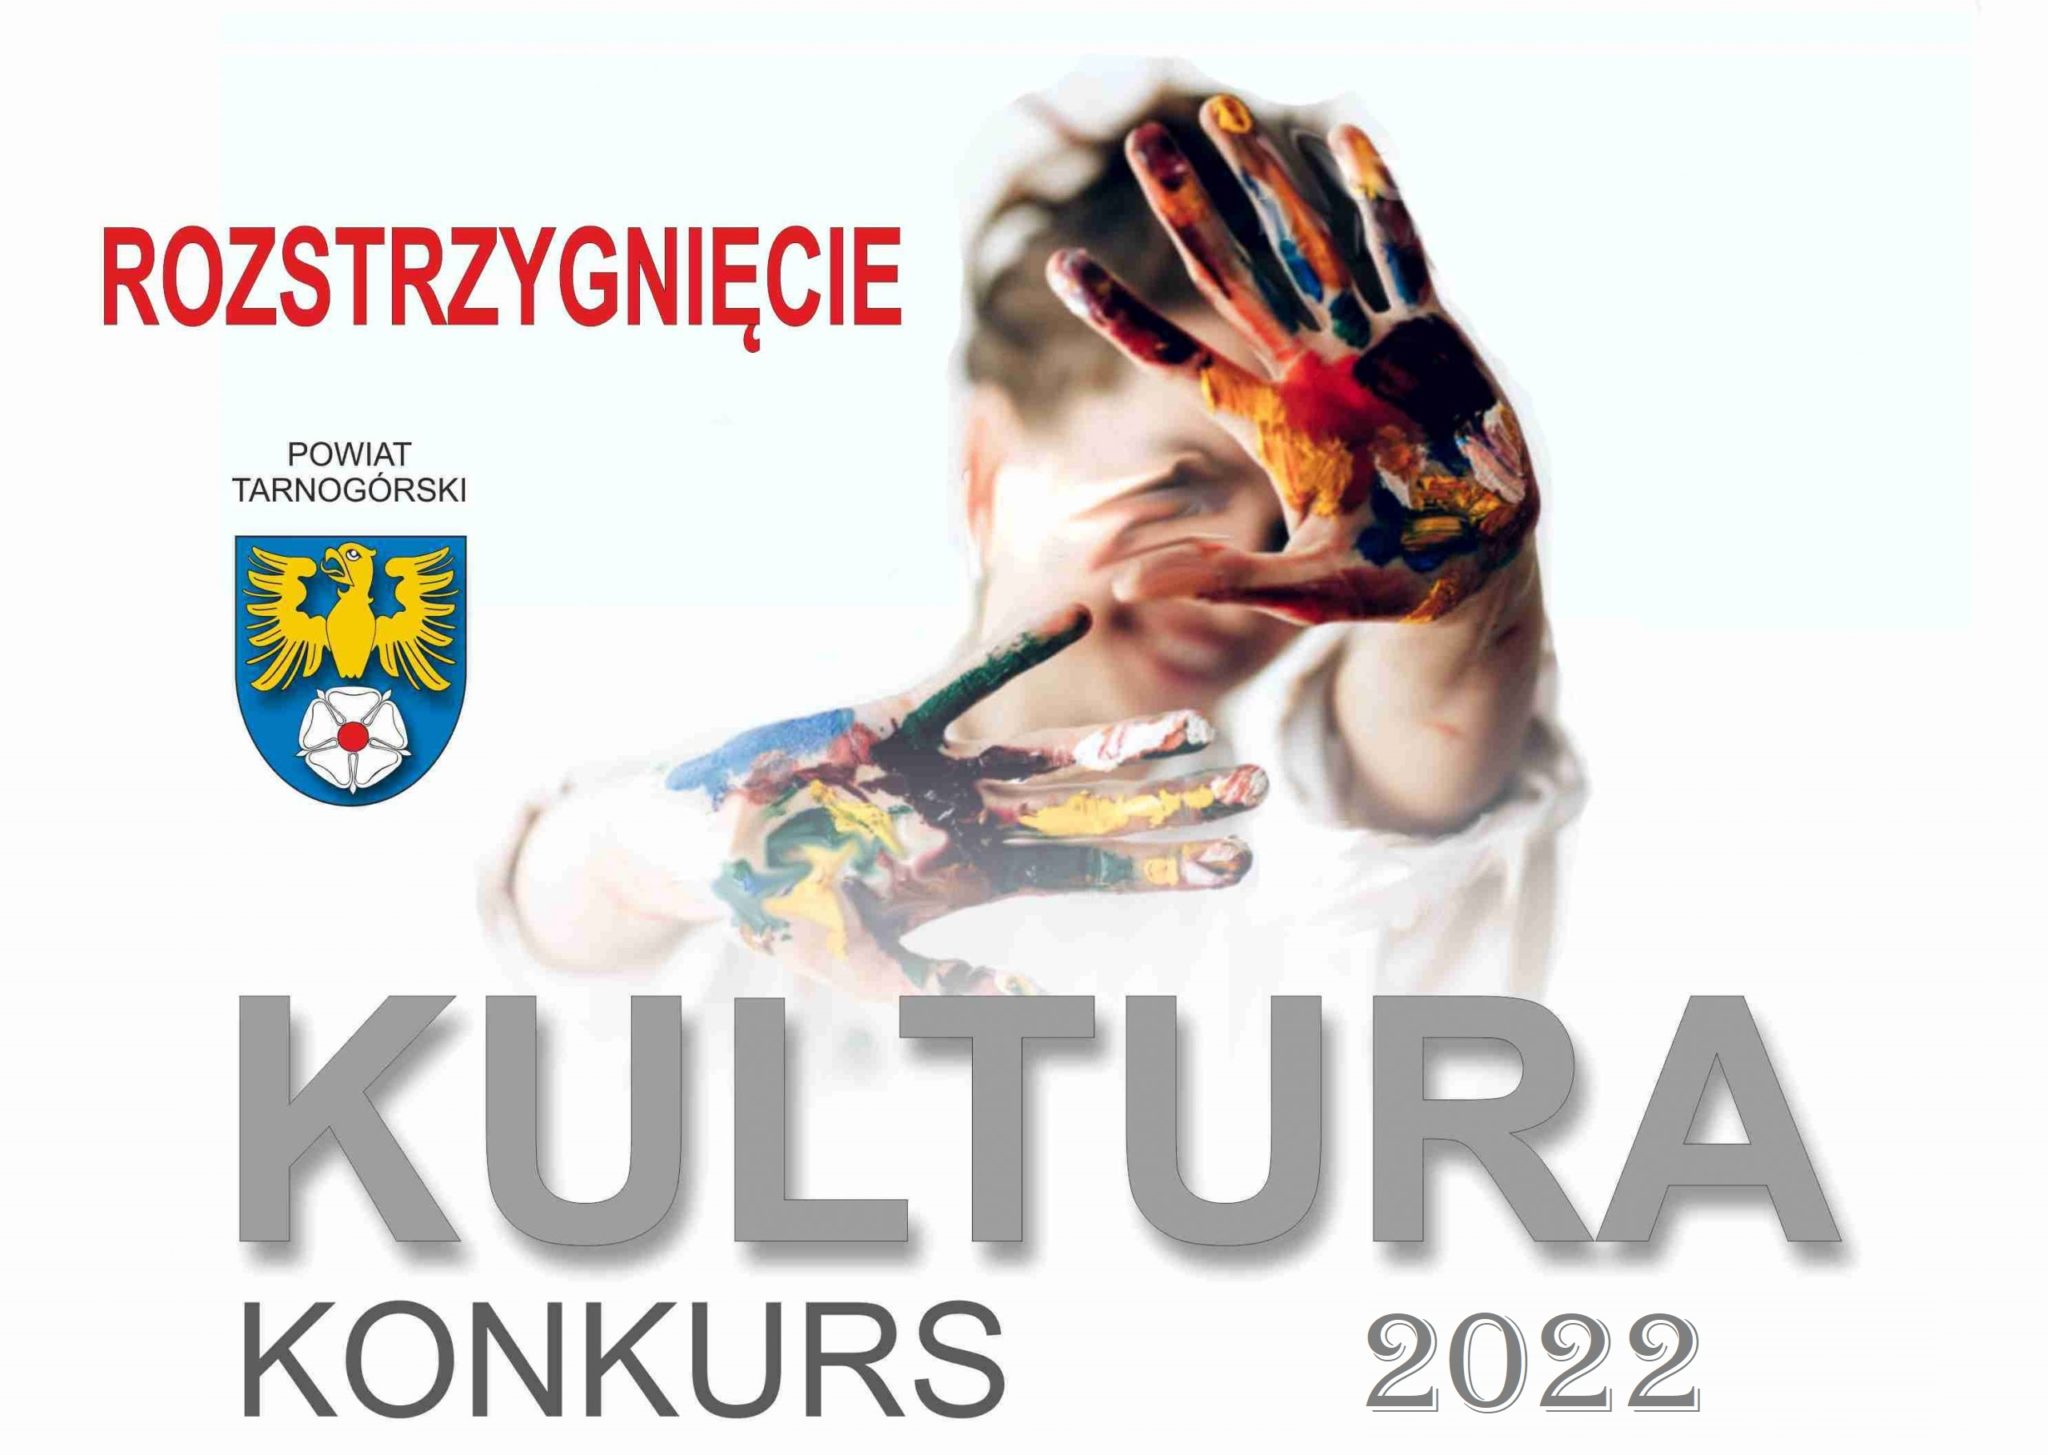 plakat, napis kultura konkurs 2022 rozstrzygnięcie w tle ręce z farb